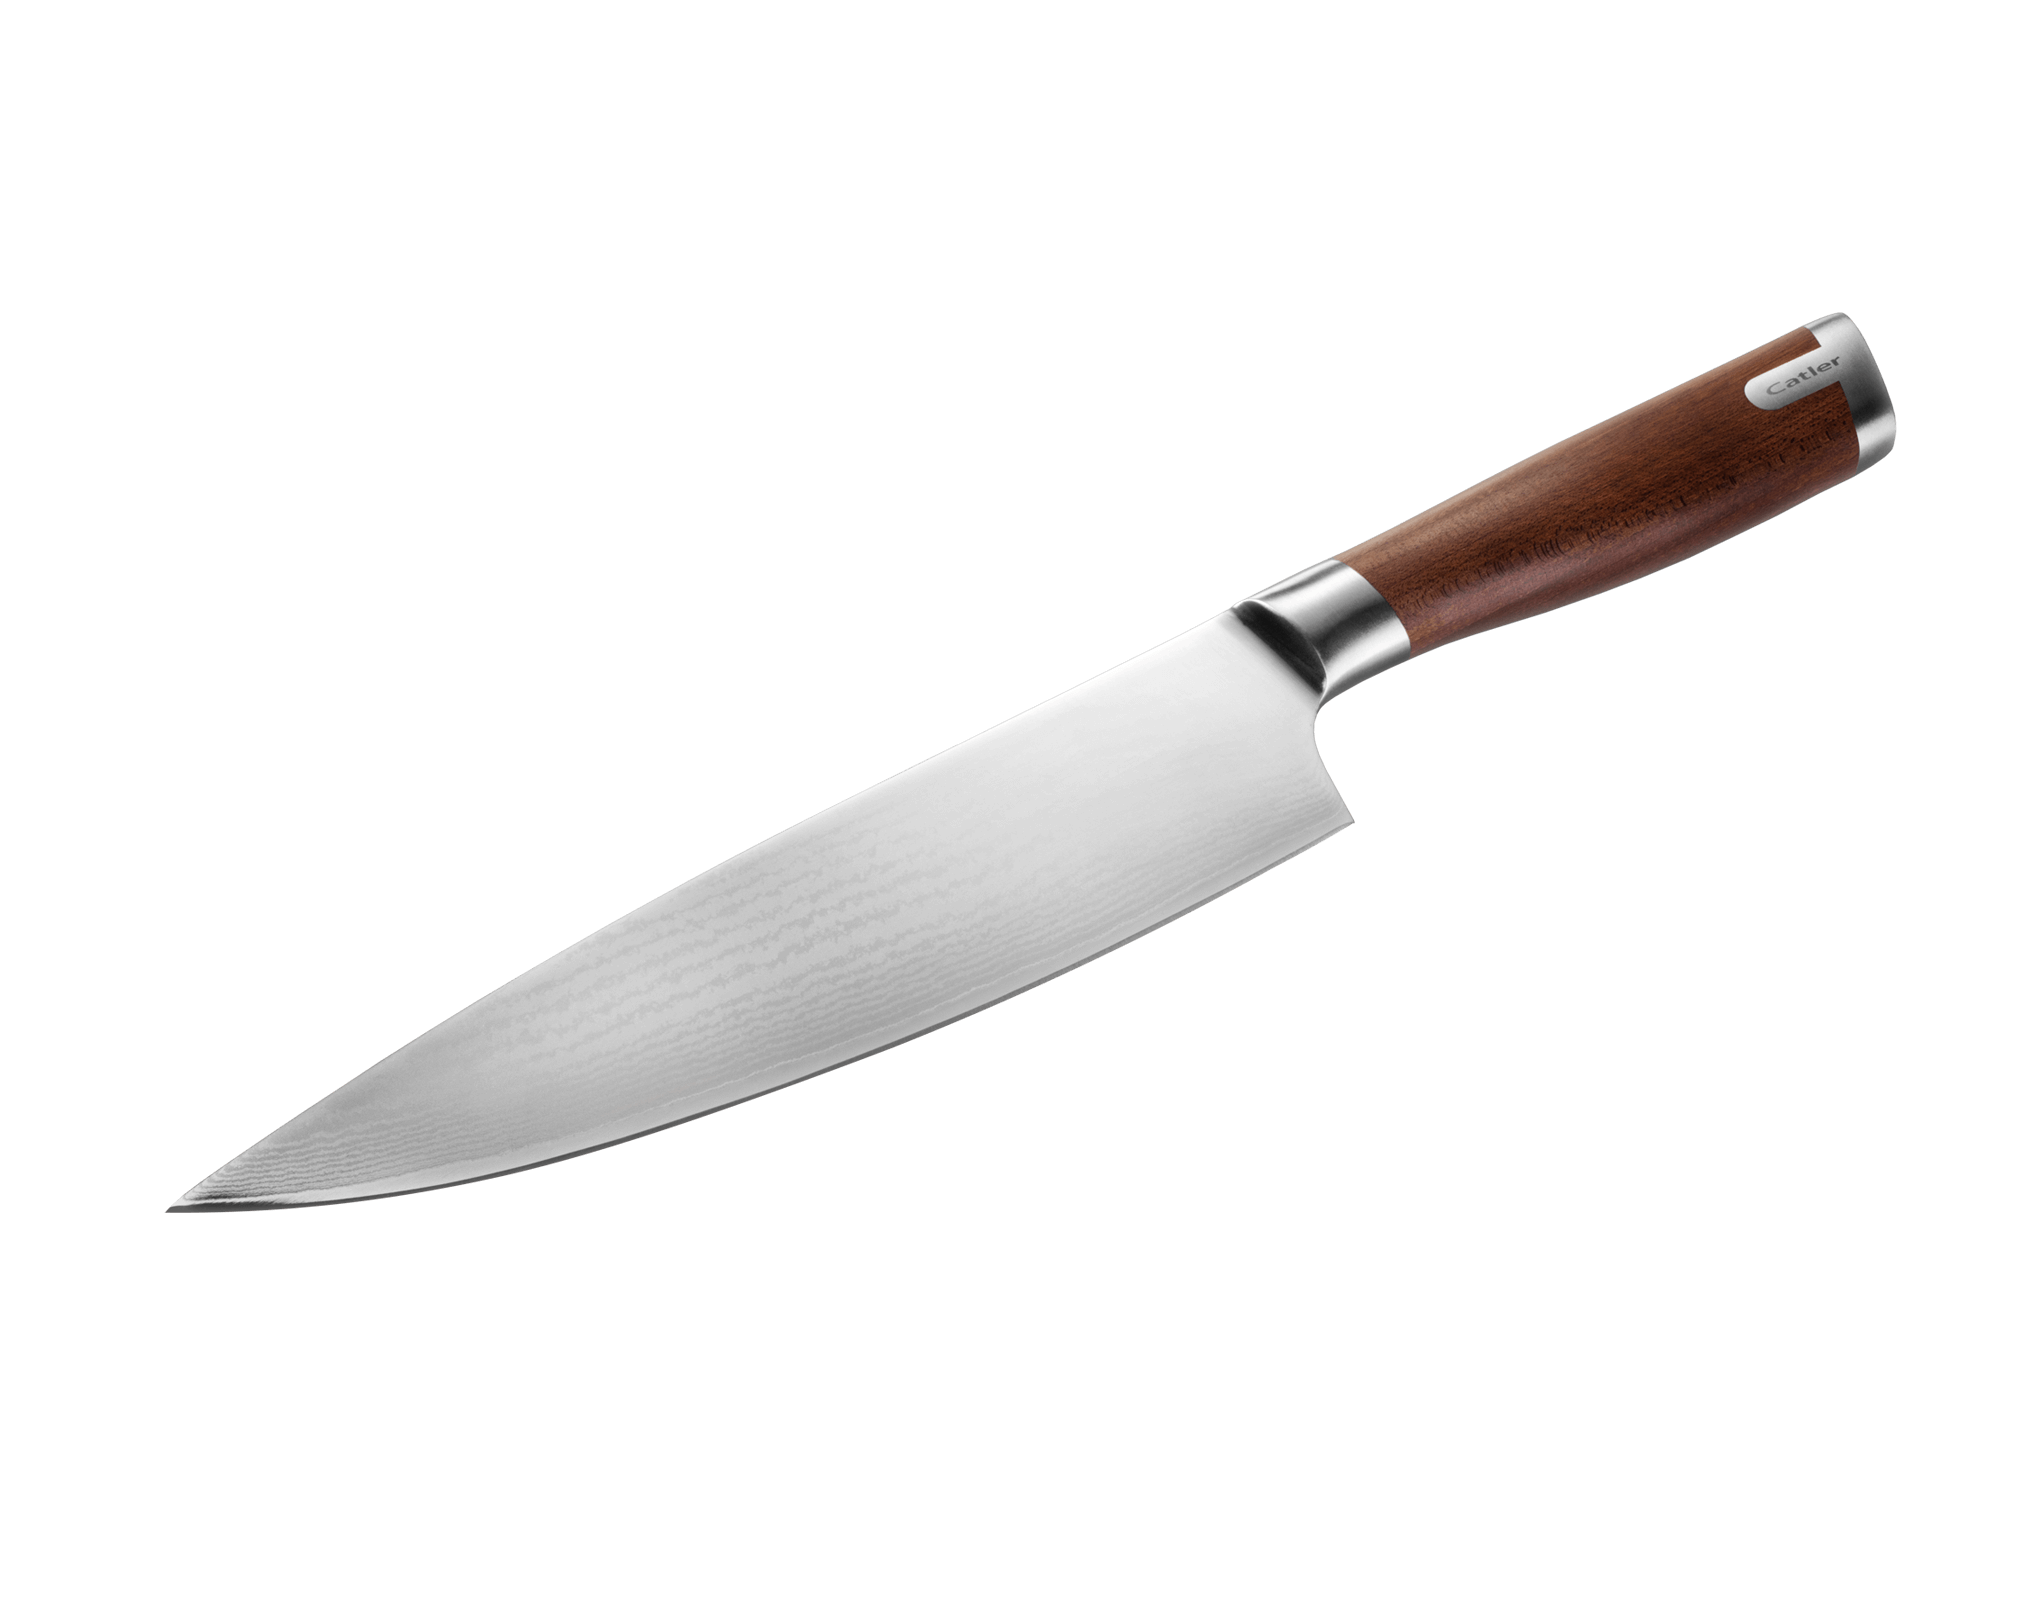 DMS Chef Knife